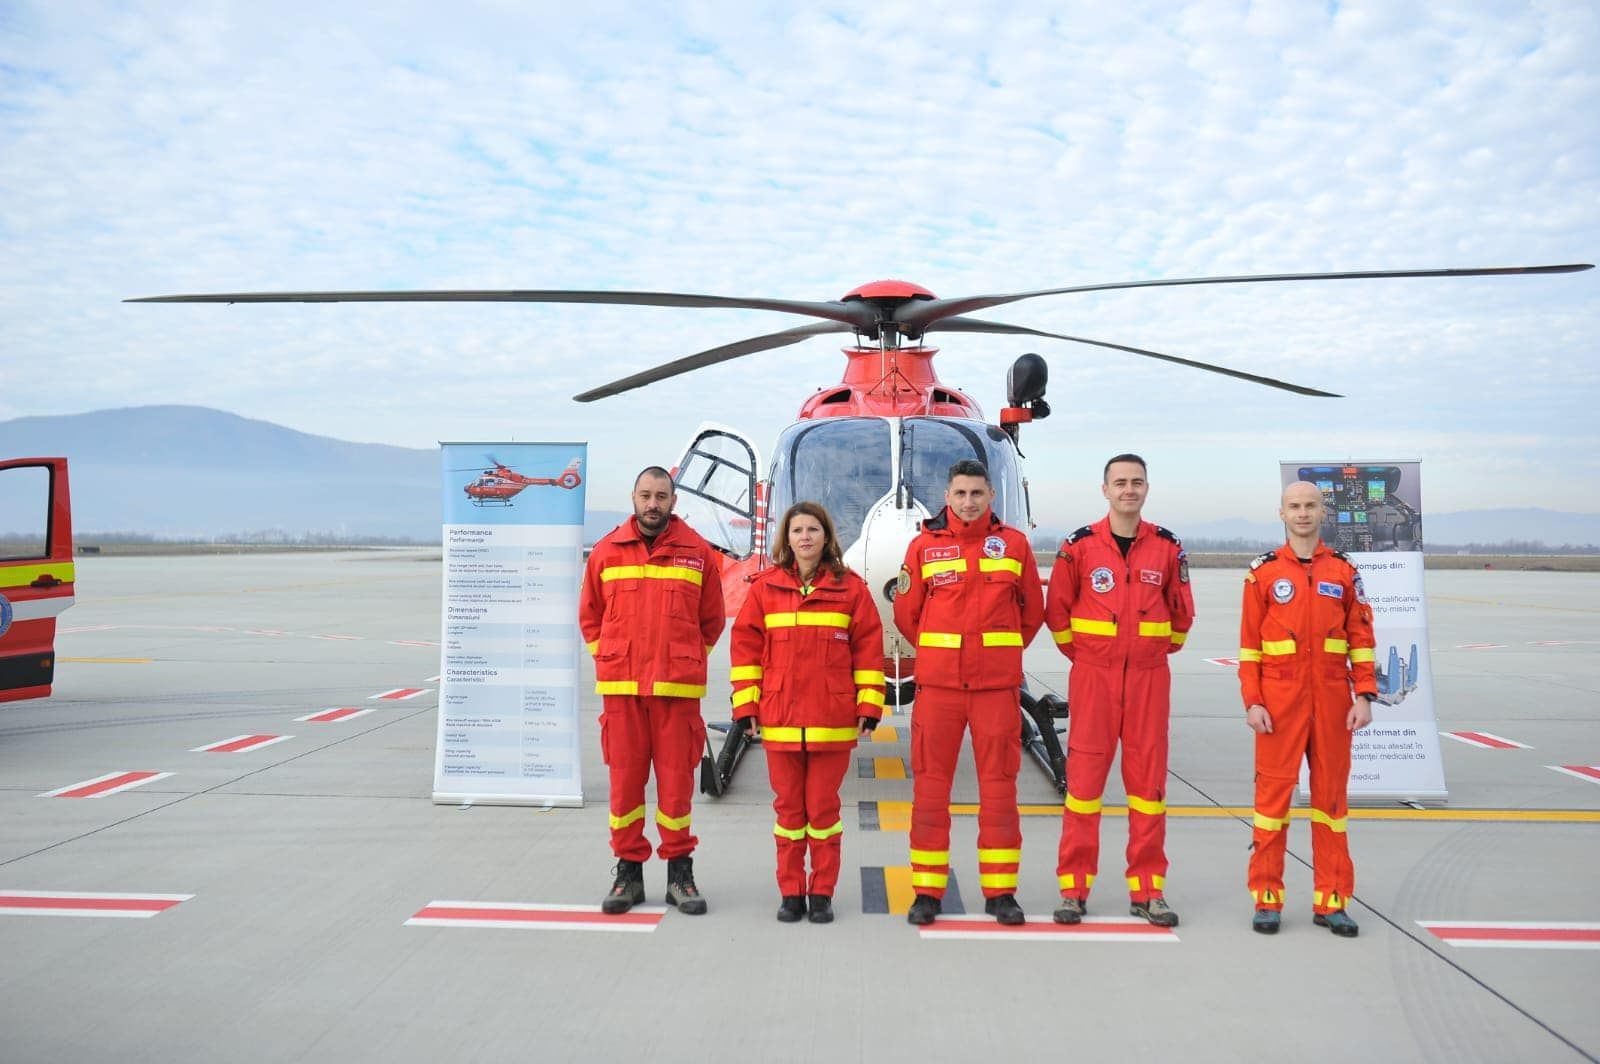 Al zecelea punct de salvare aeromedicală din ţară, inaugurat la Braşov